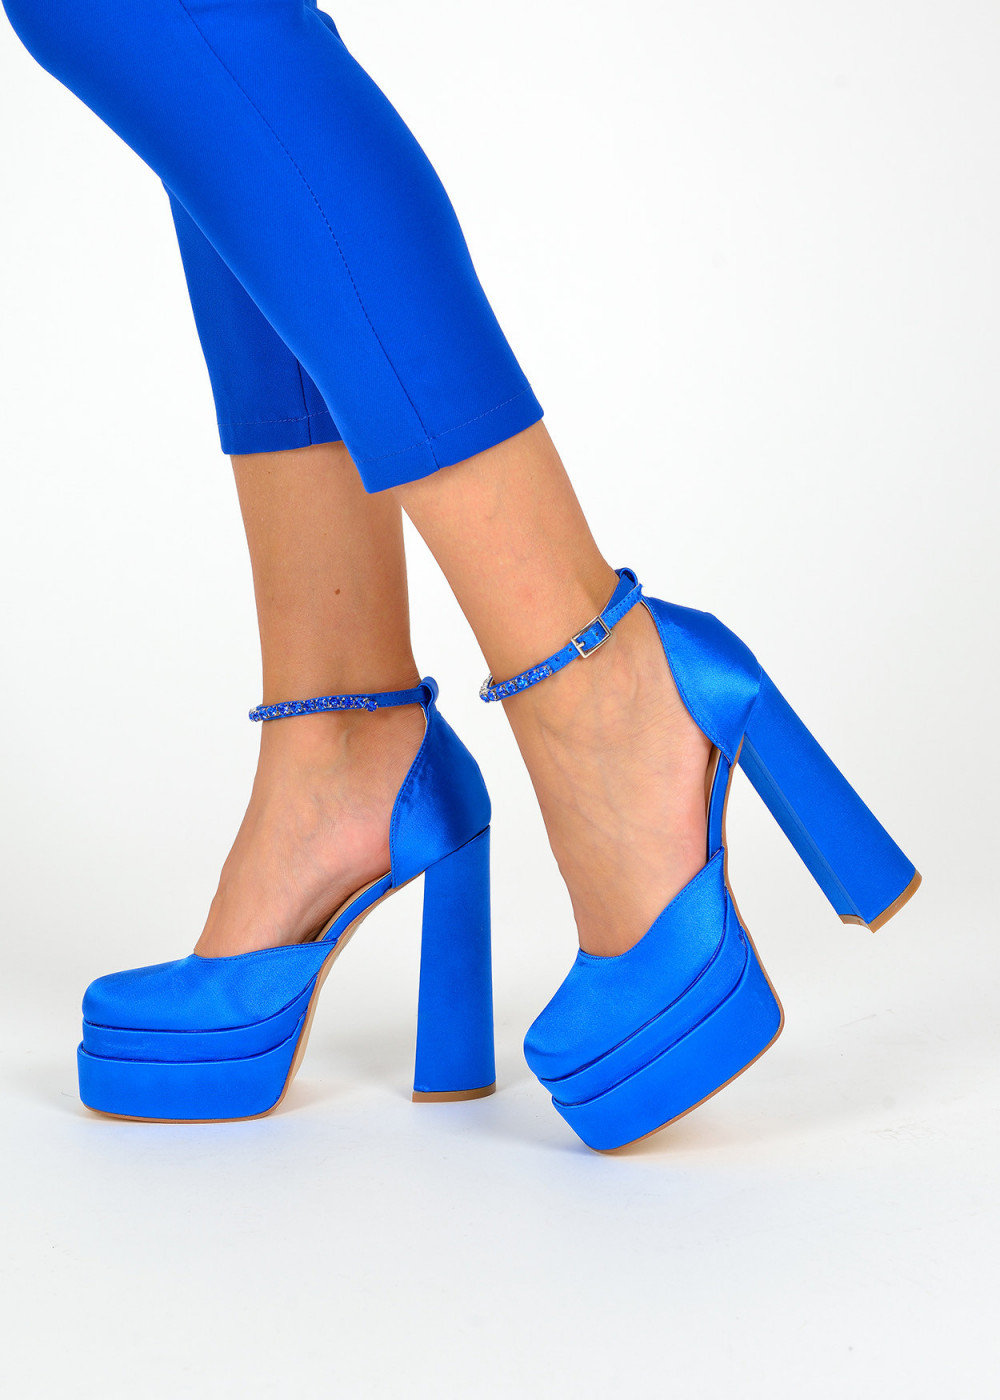 Blue platform heeled shoes 3